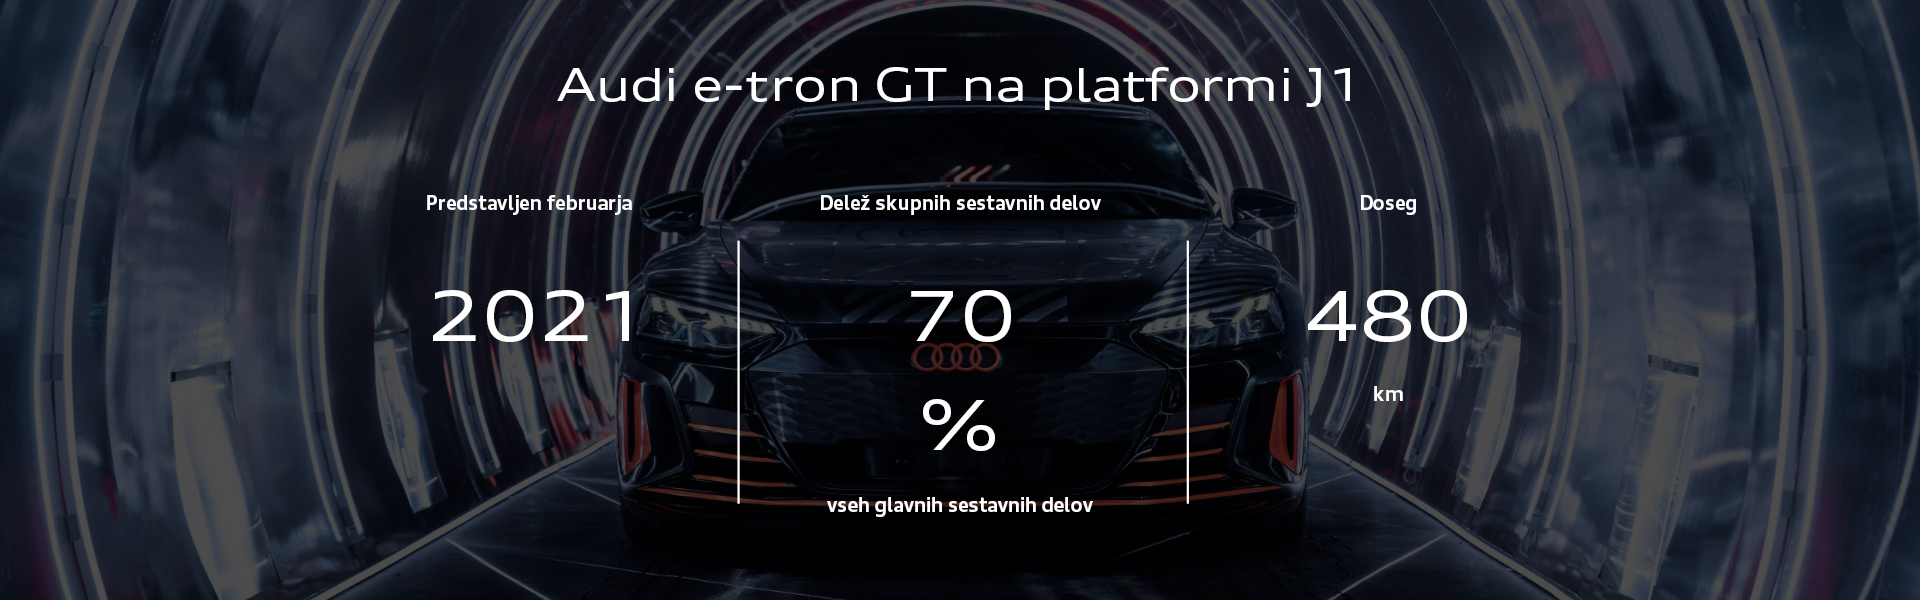 Audi e-tron GT na platformi J1